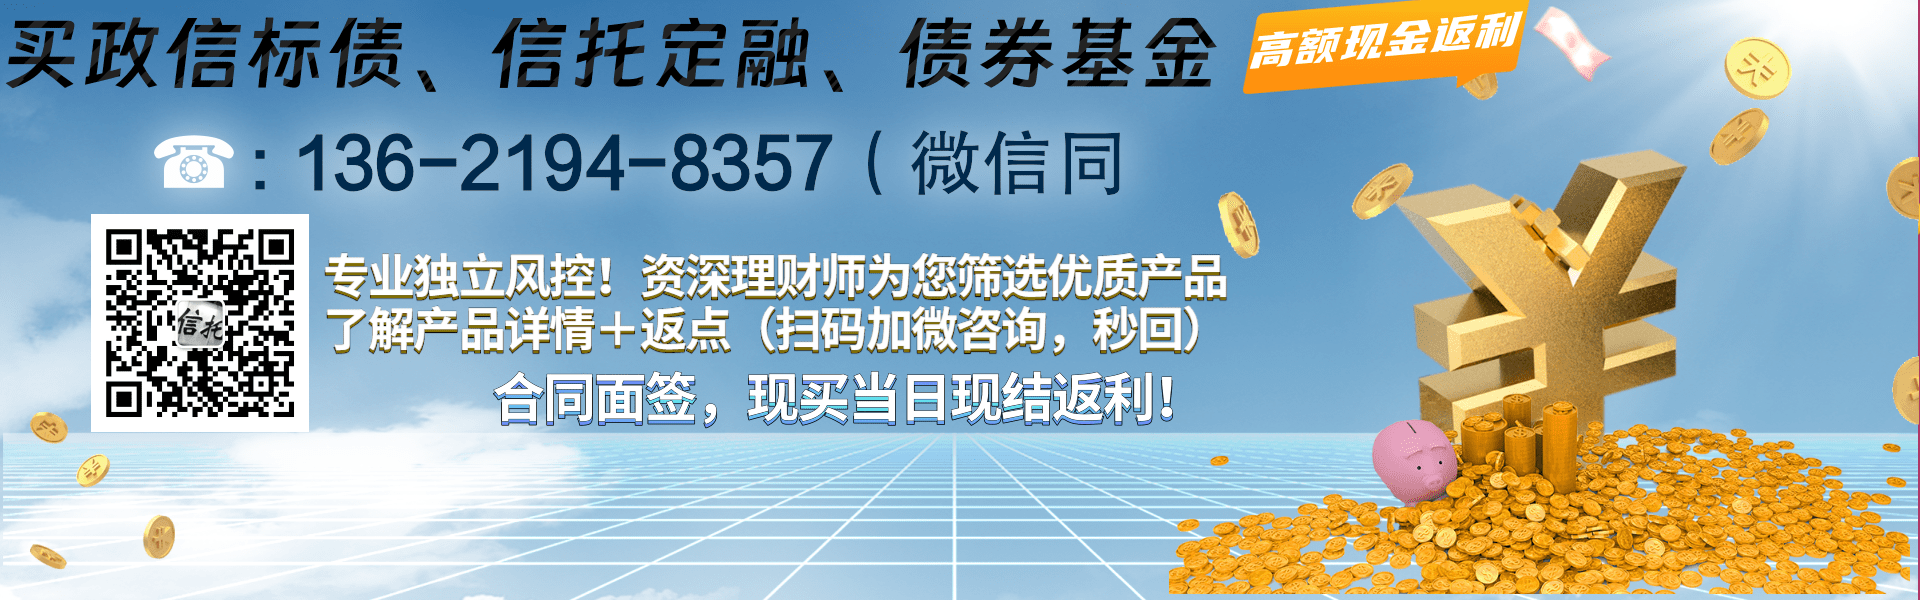 潍坊峡山水生态旅游开发01号/02号债权融资计划